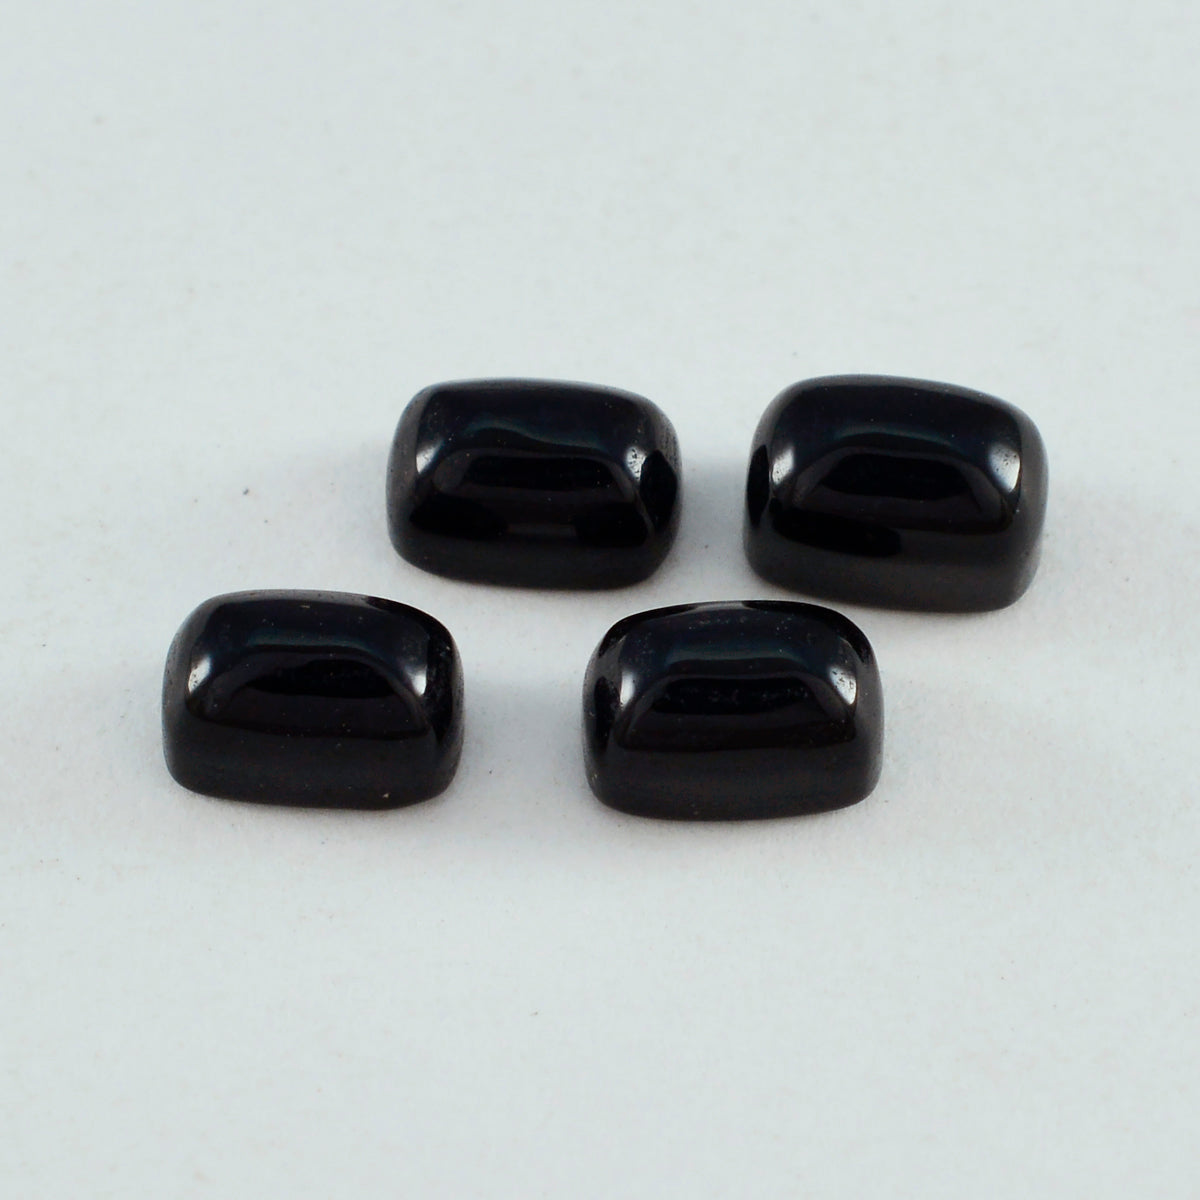 Riyogems 1 Stück schwarzer Onyx-Cabochon, 6 x 8 mm, achteckige Form, schön aussehende, hochwertige lose Edelsteine